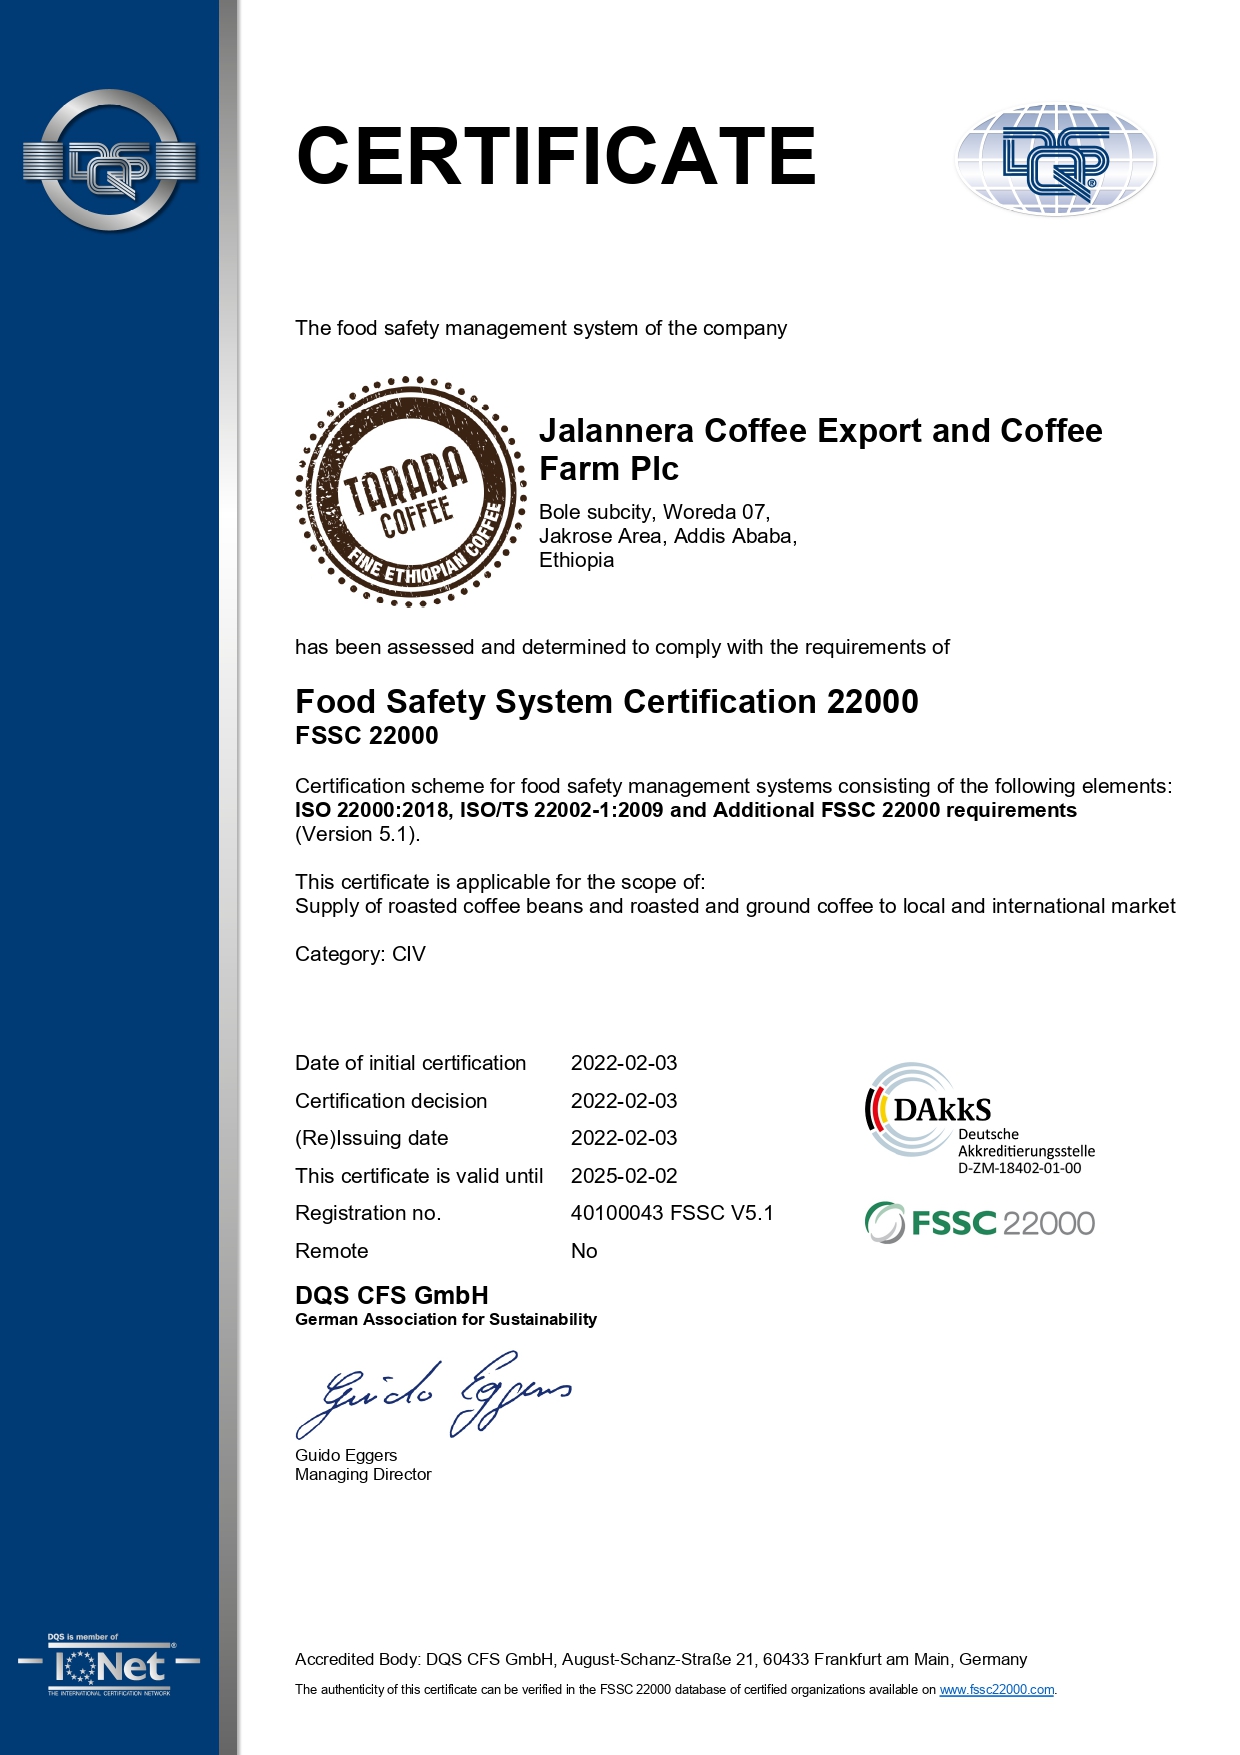 FSSC Certification